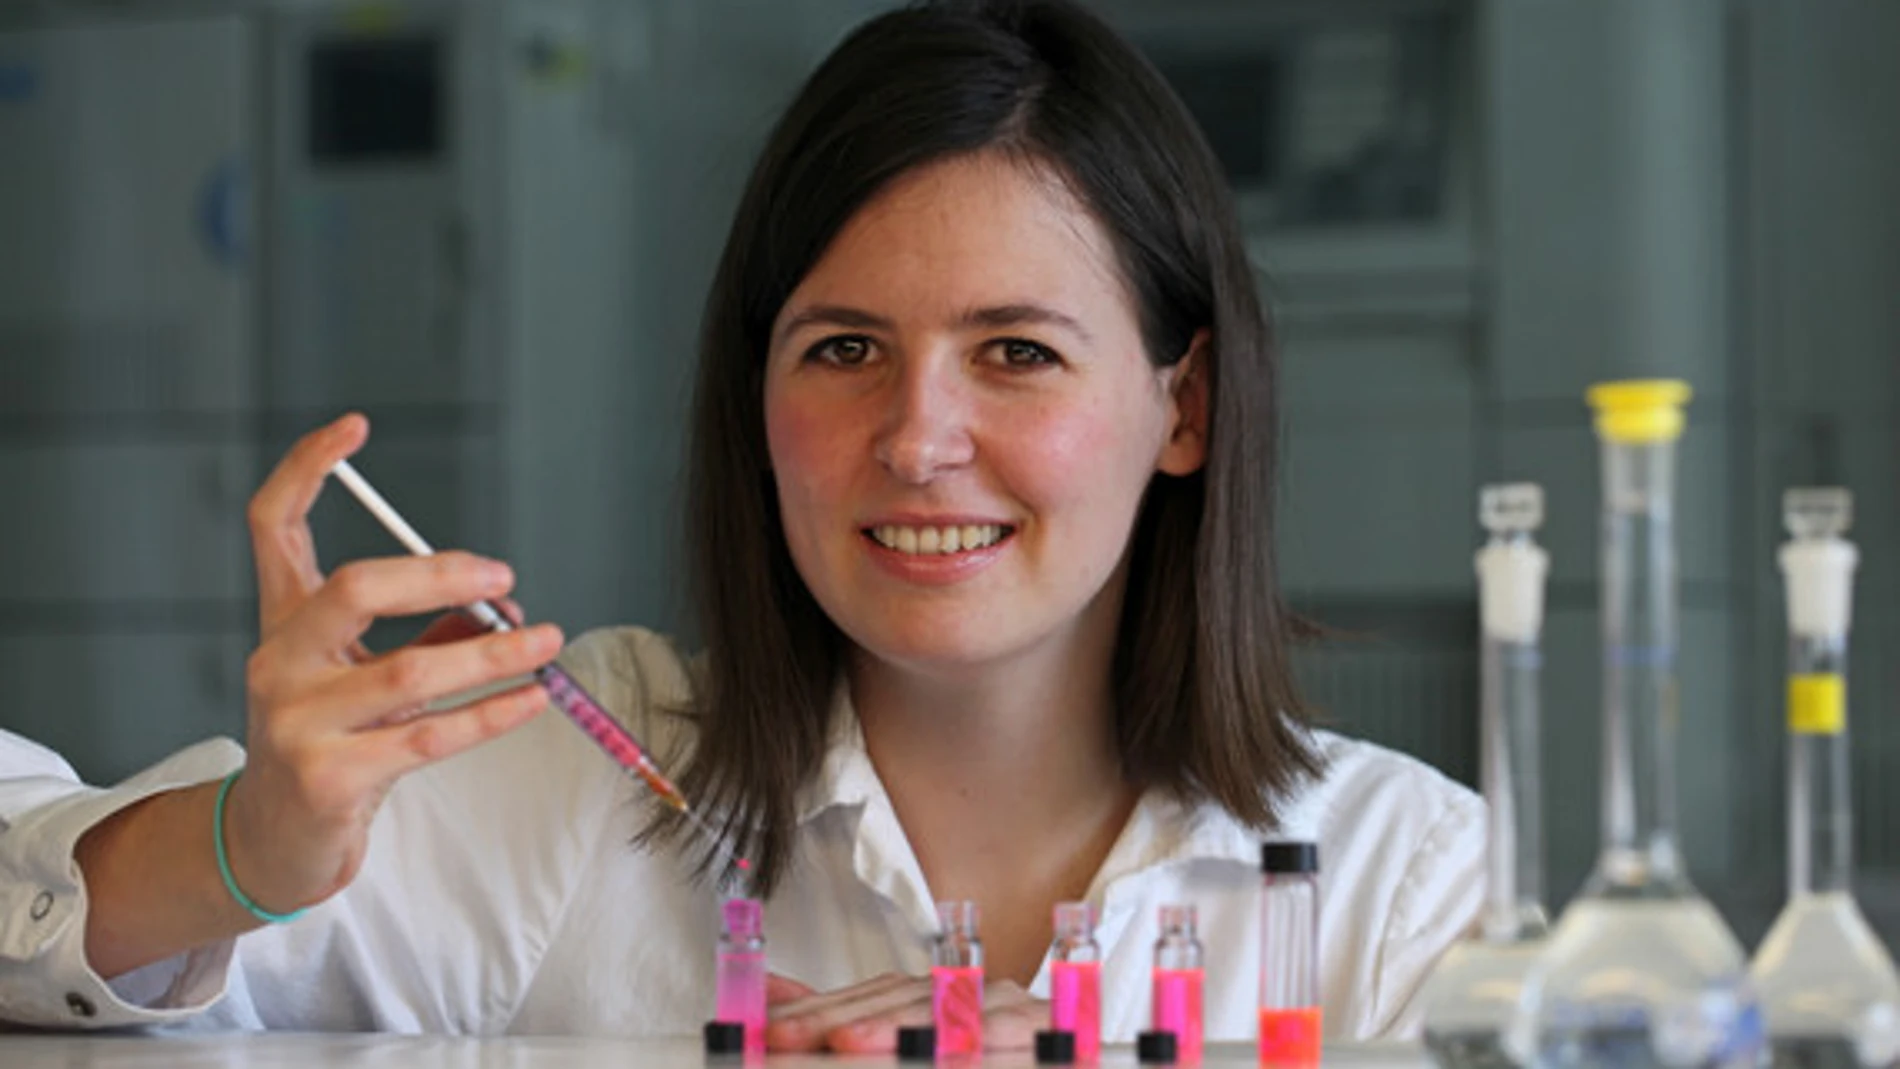 Leticia Hosta Rigau en su laboratorio de la Universidad Tecnica de Dinamarca. El líquido rosa de los tubos de esnsayo son liposomas con un fluoroforo de rodamina